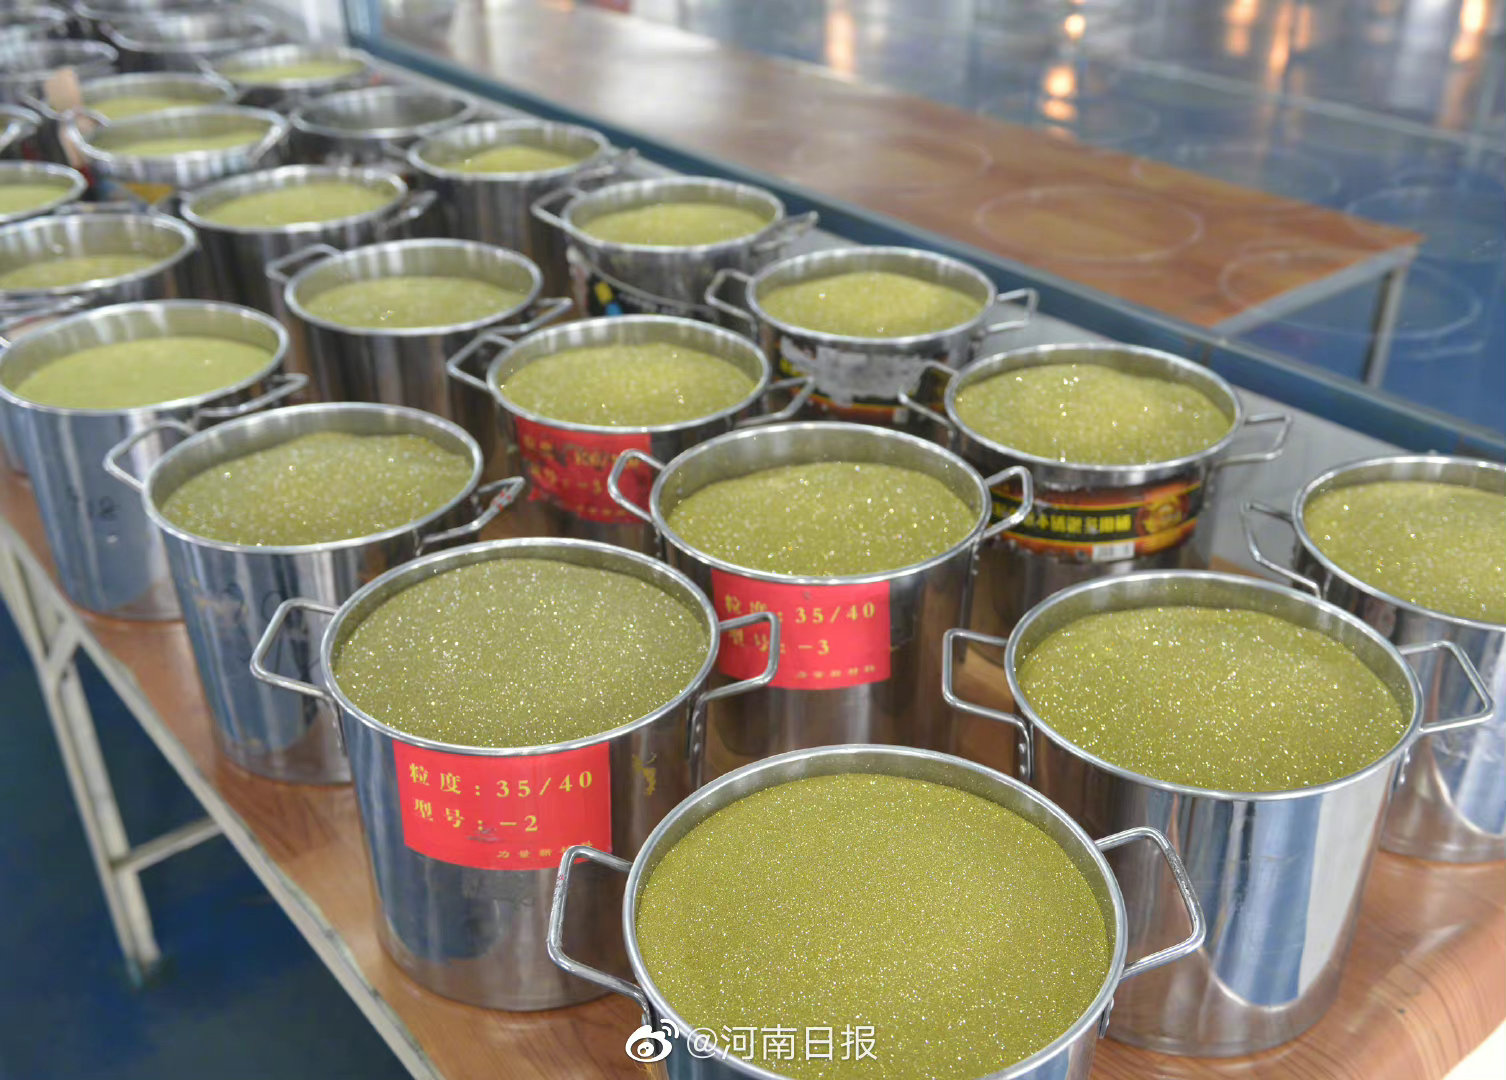 تشيتشنغ، تنتج 8 ملايين قيراط من الألماس سنويا